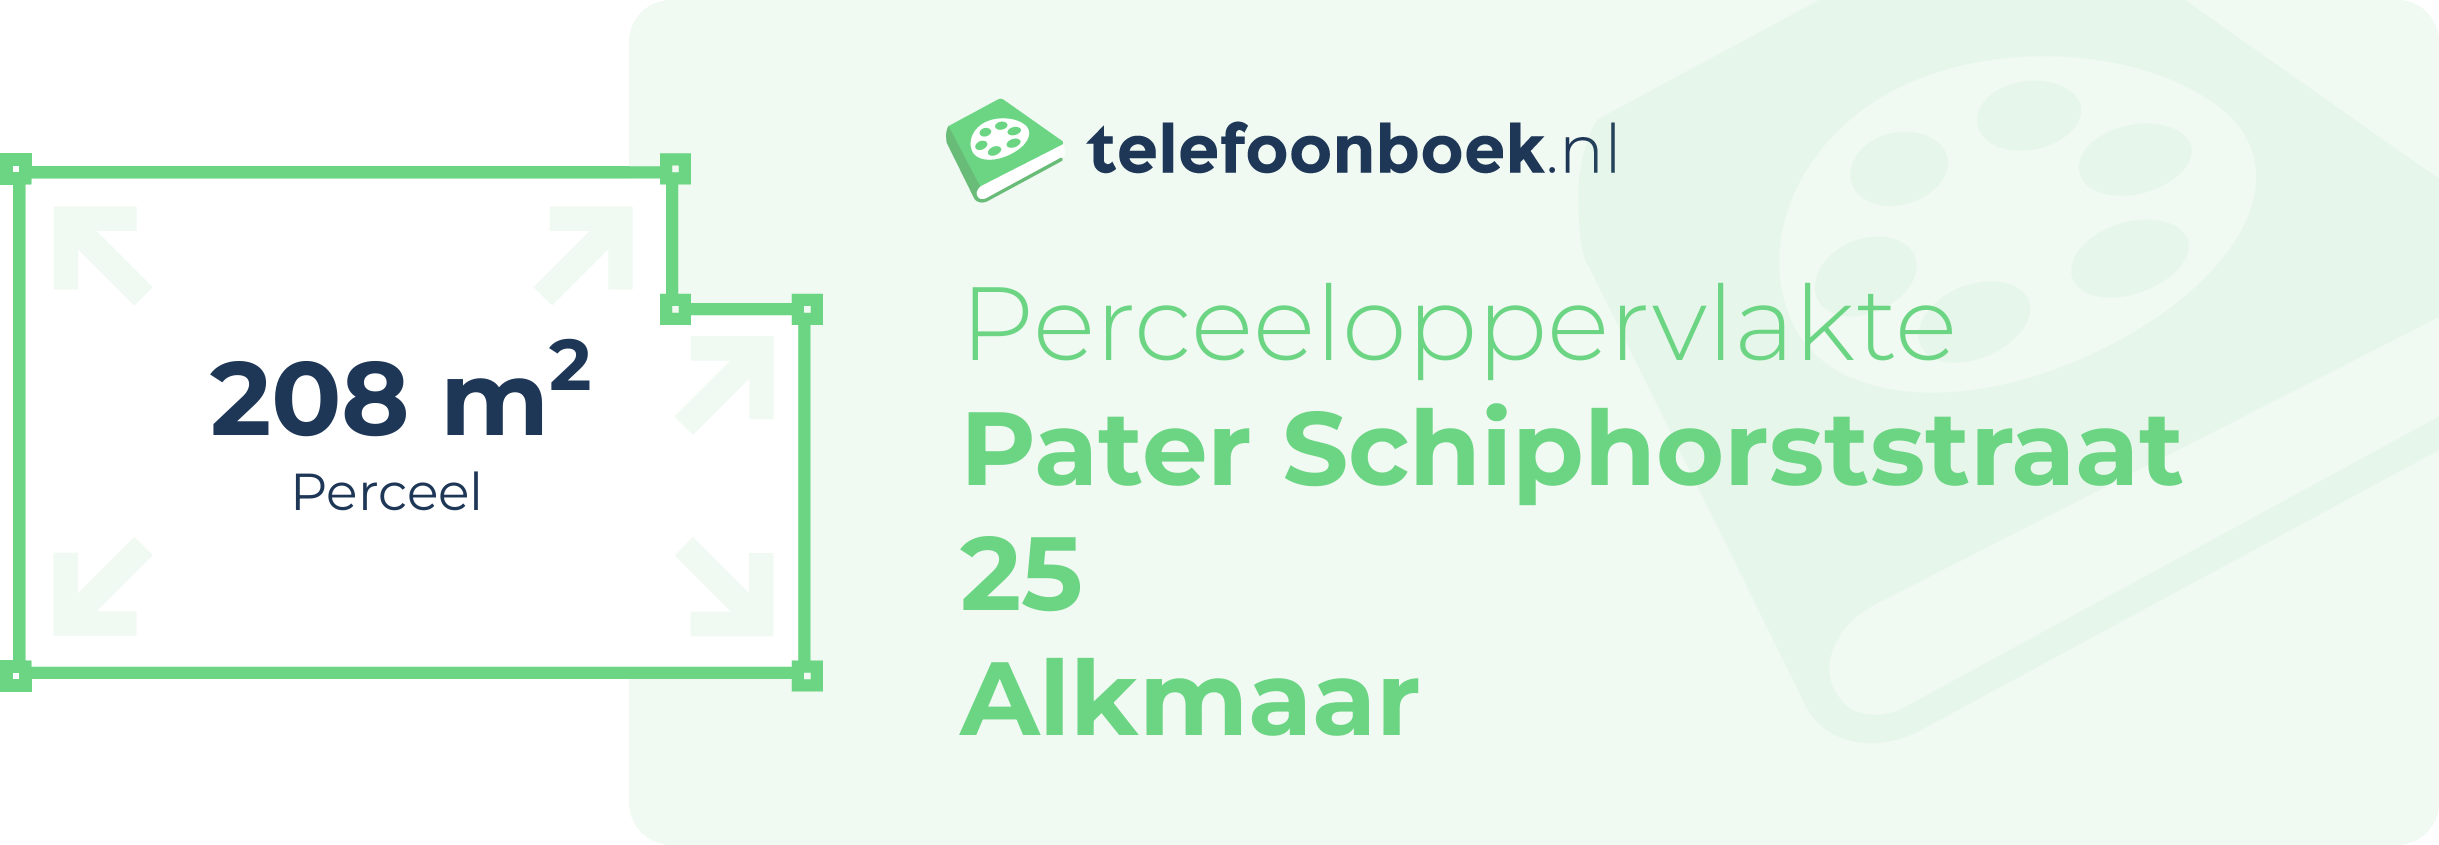 Perceeloppervlakte Pater Schiphorststraat 25 Alkmaar